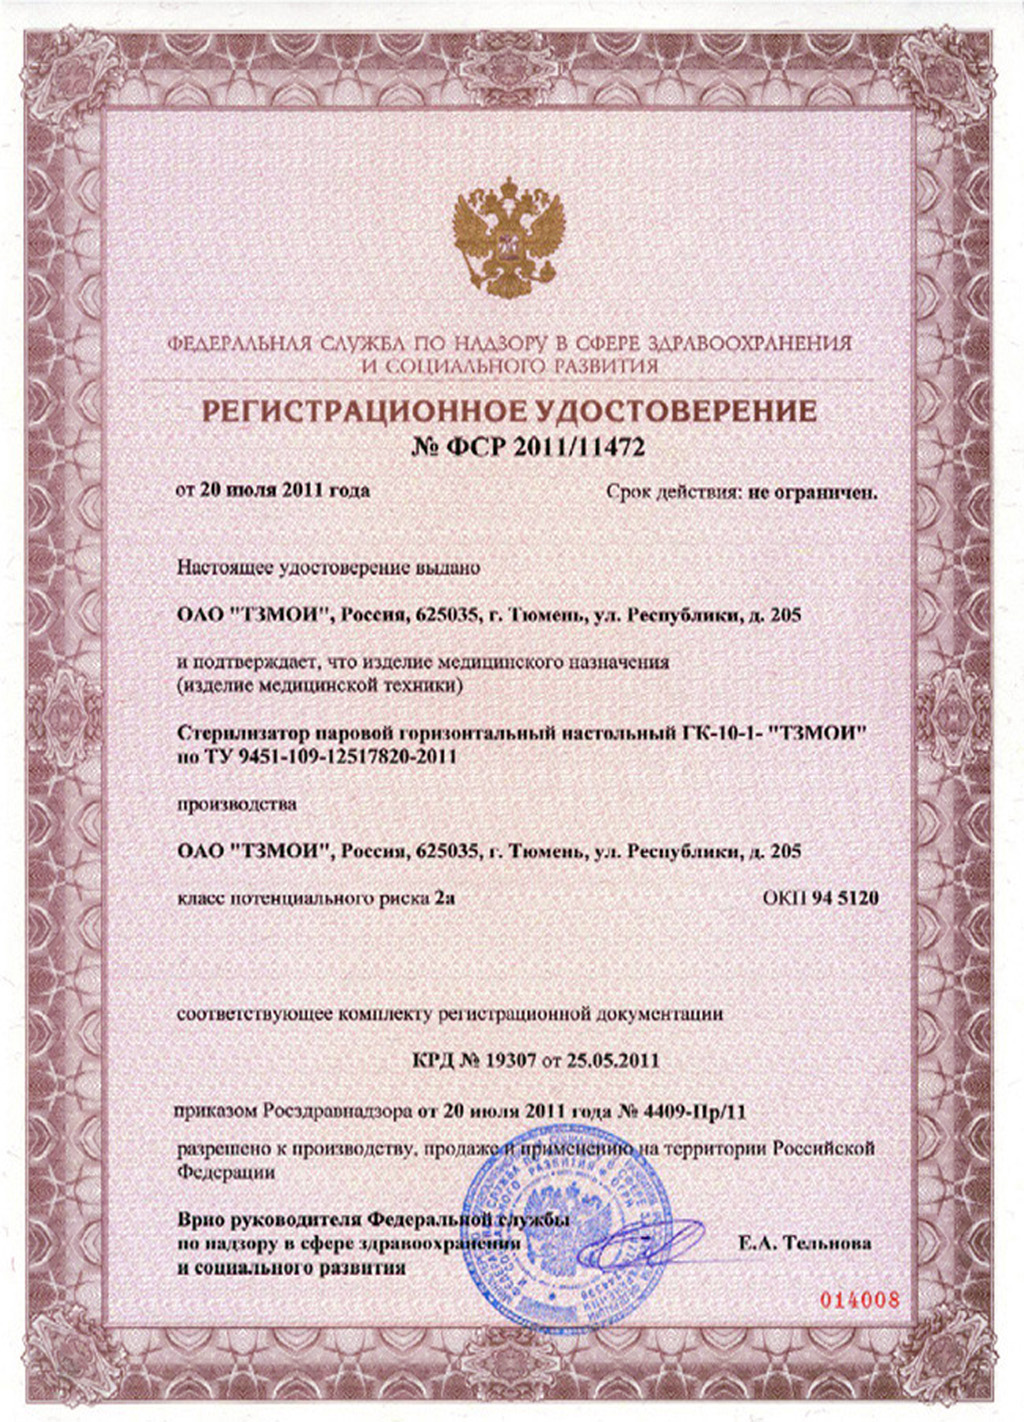 сертификат ГК-10-1 Стерилизатор паровой горизонтальный настольный